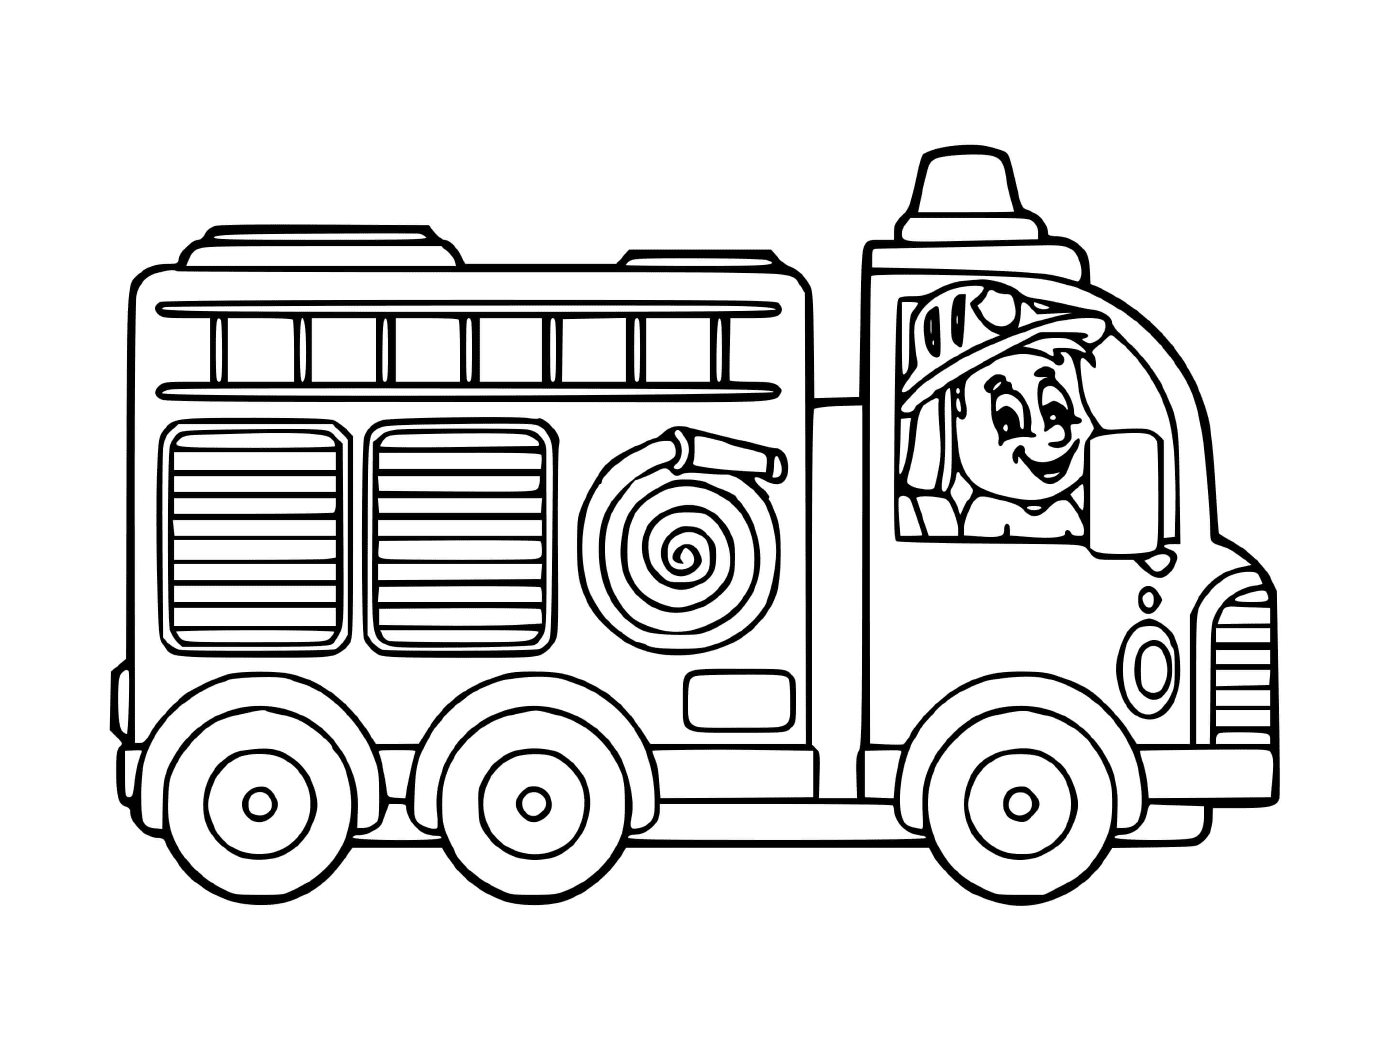  A fire truck for kindergarten 